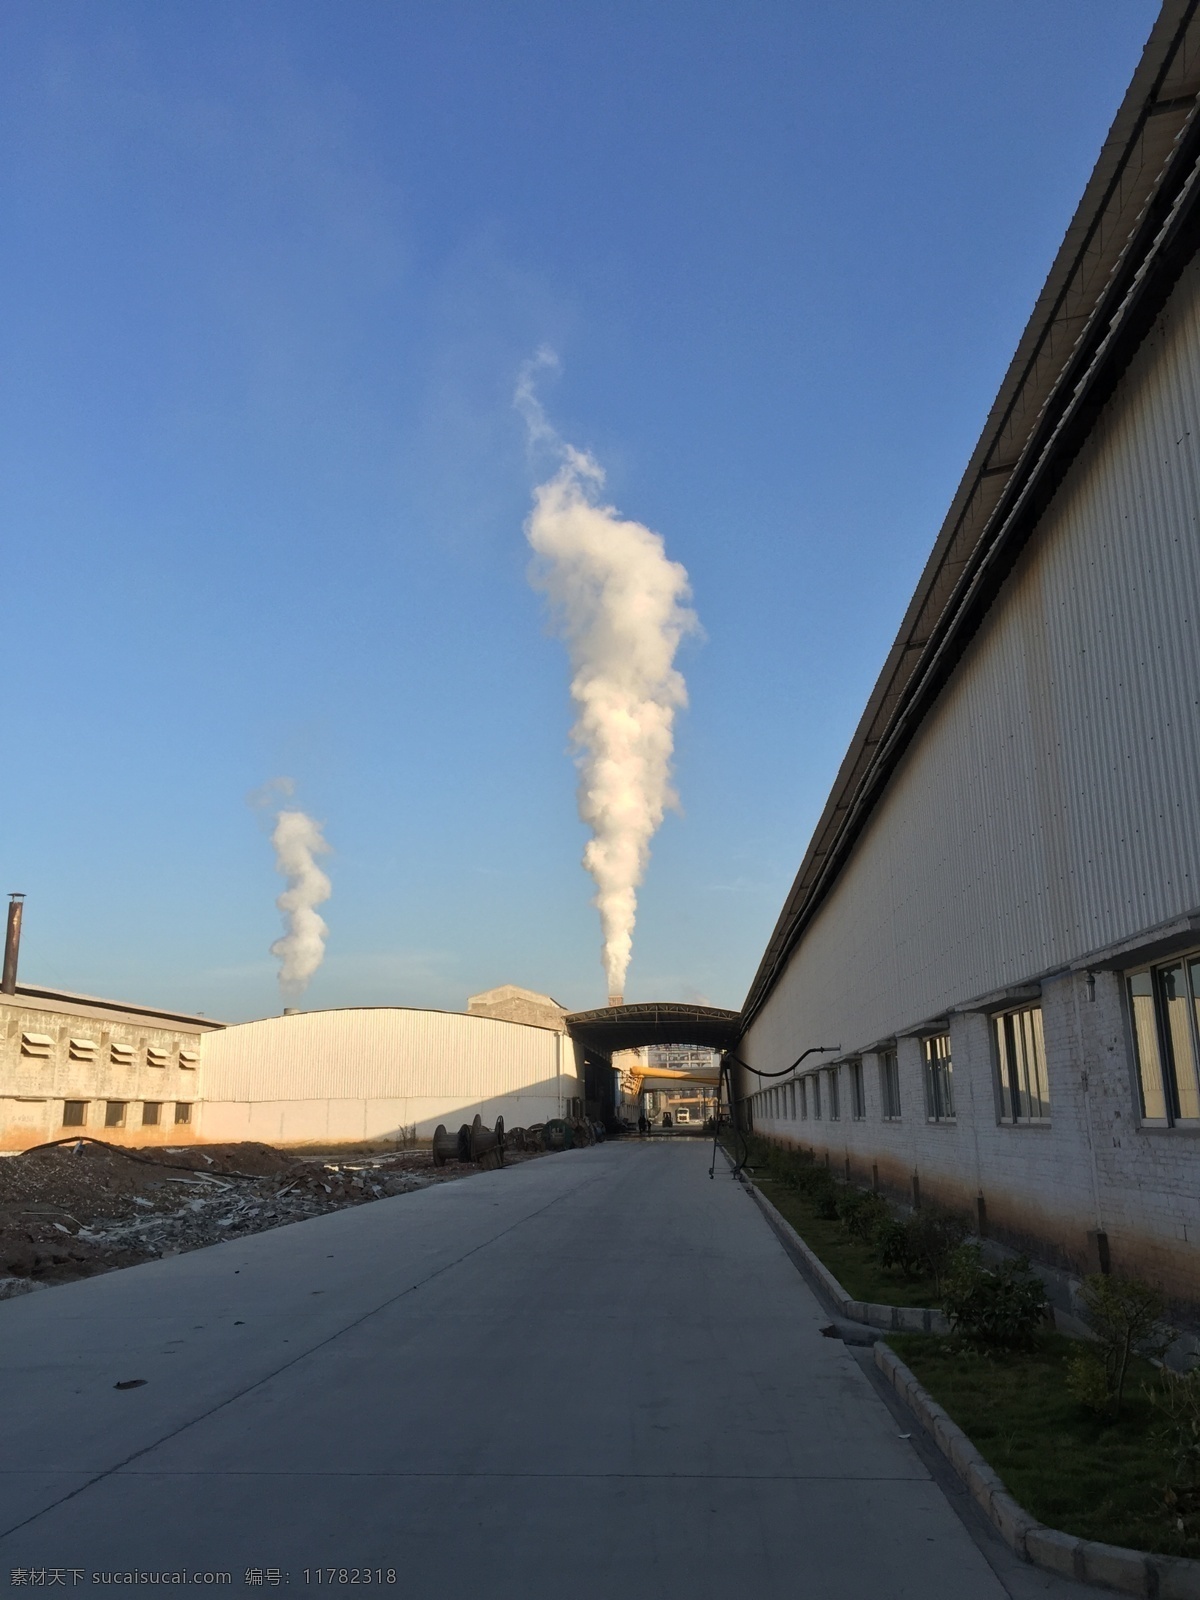 工厂废气 广西 藤县 中和工业园 工厂 烟囱 废气 白色的烟 无人 黑色